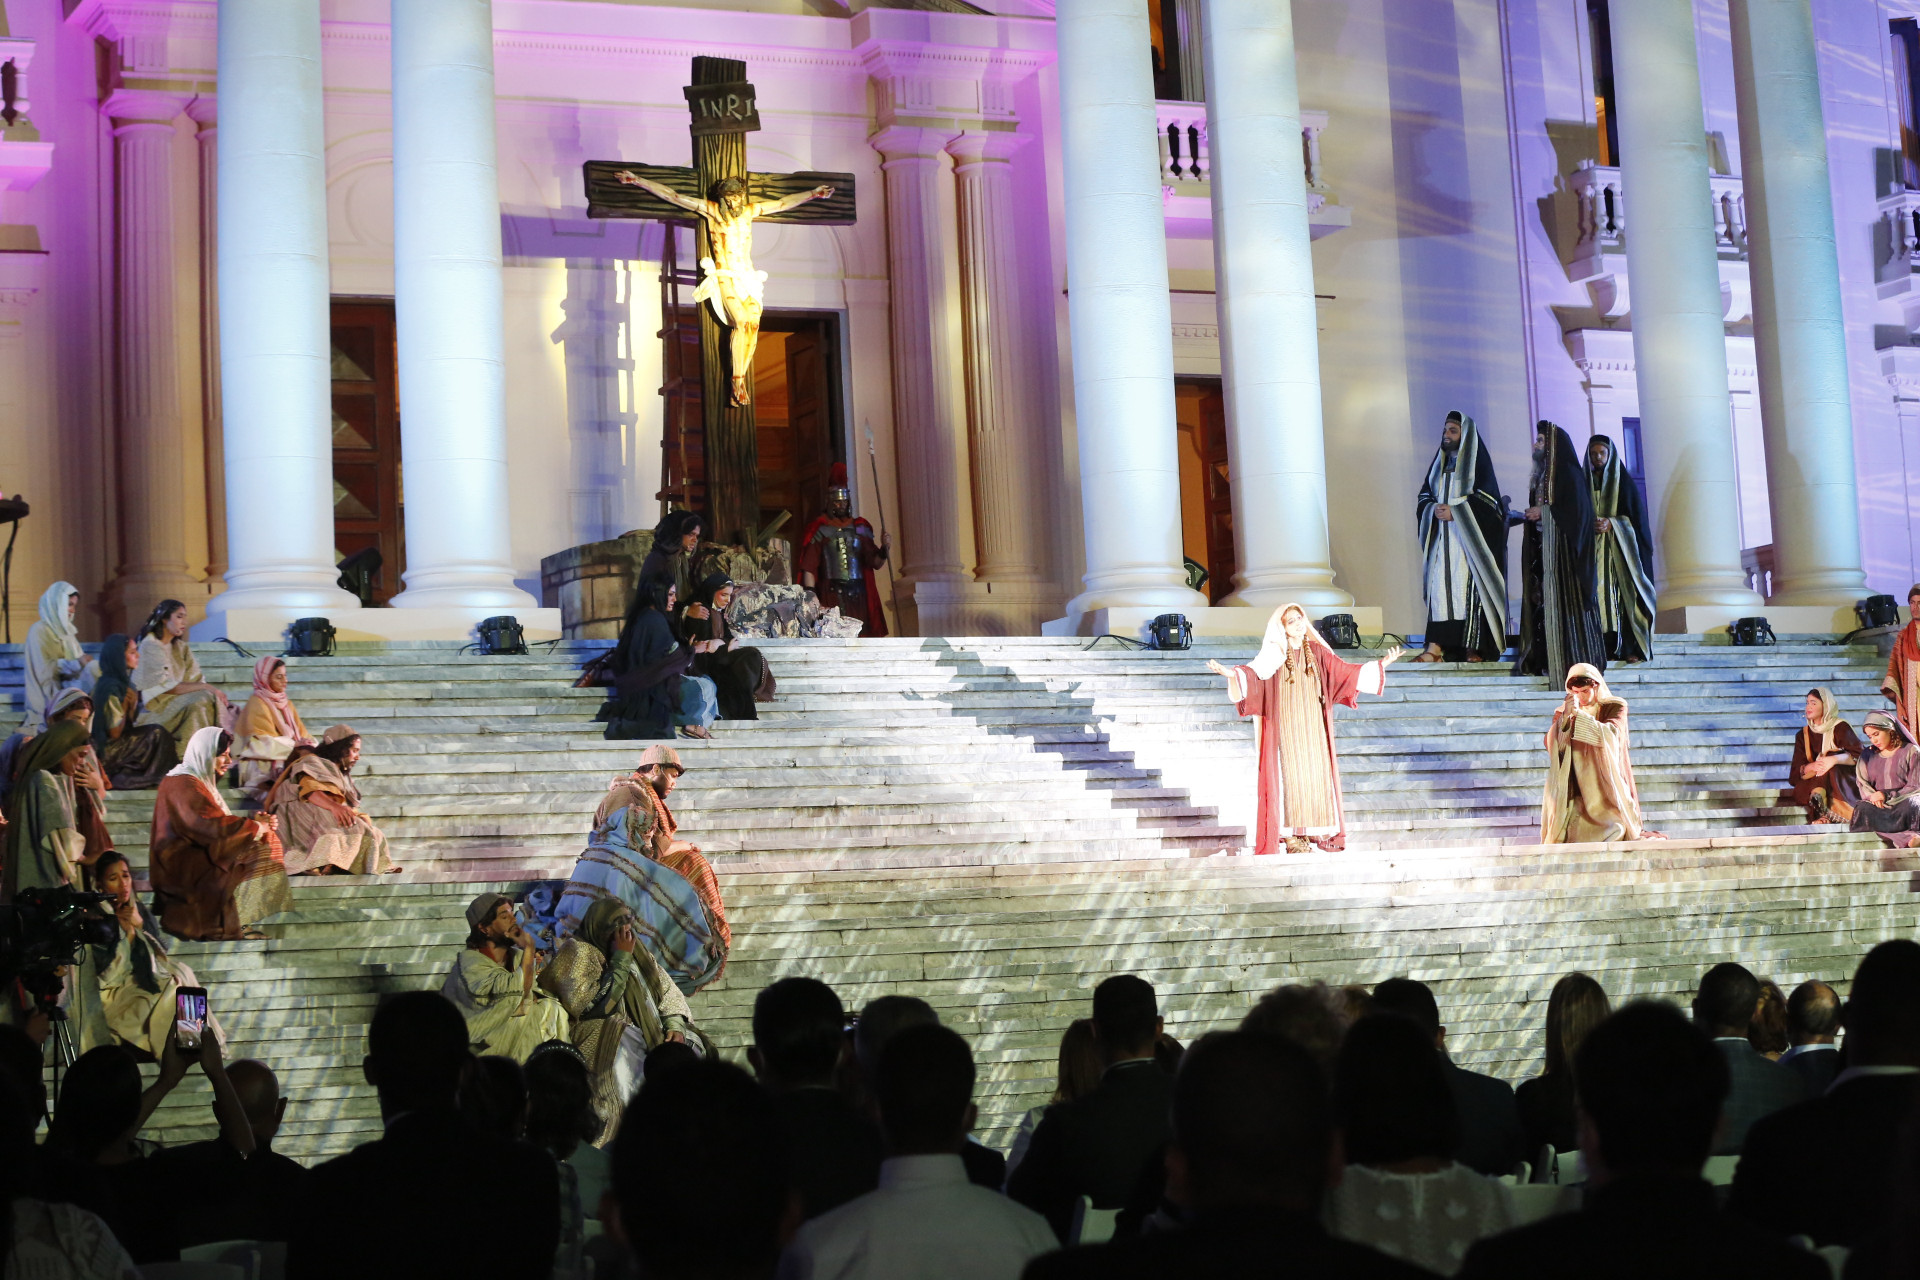 REPÚBLICA DOMINICANA: Primera dama presenta en el Palacio Nacional la pieza musical Las Siete Palabras